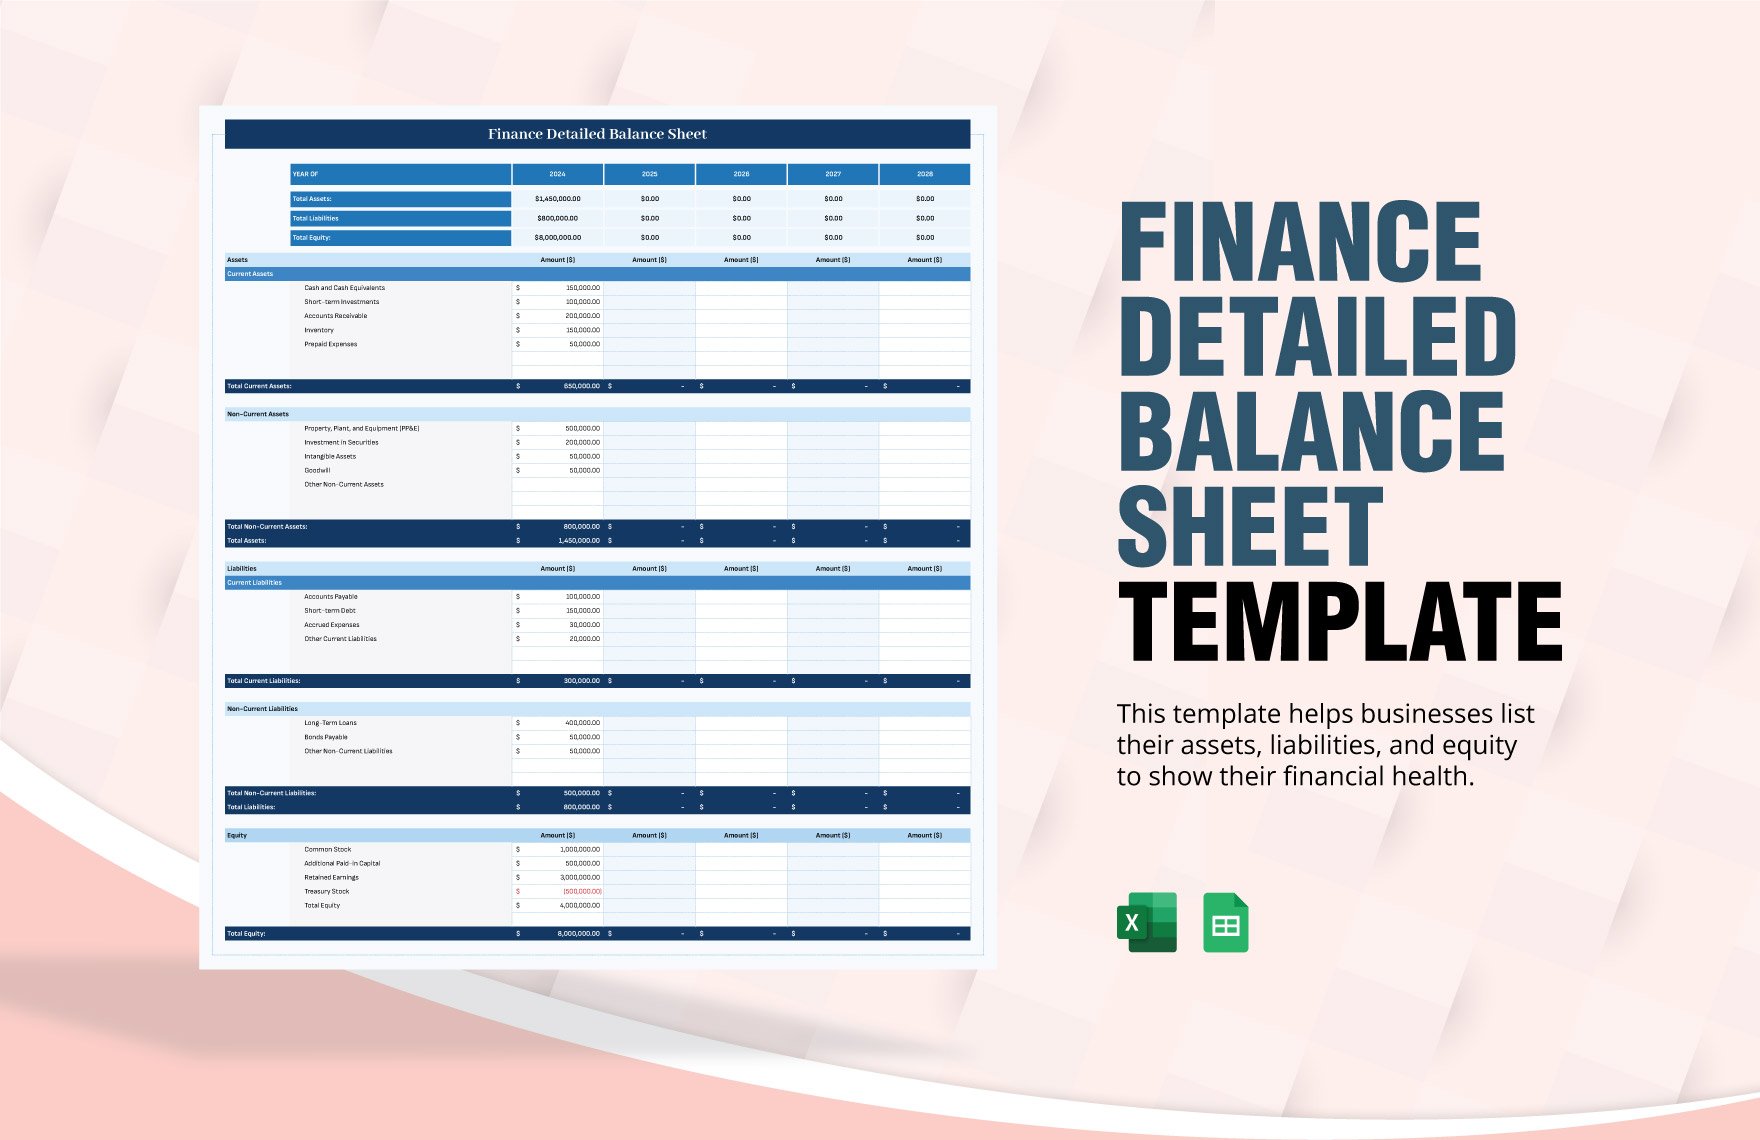 Finance Detailed Balance Sheet Template